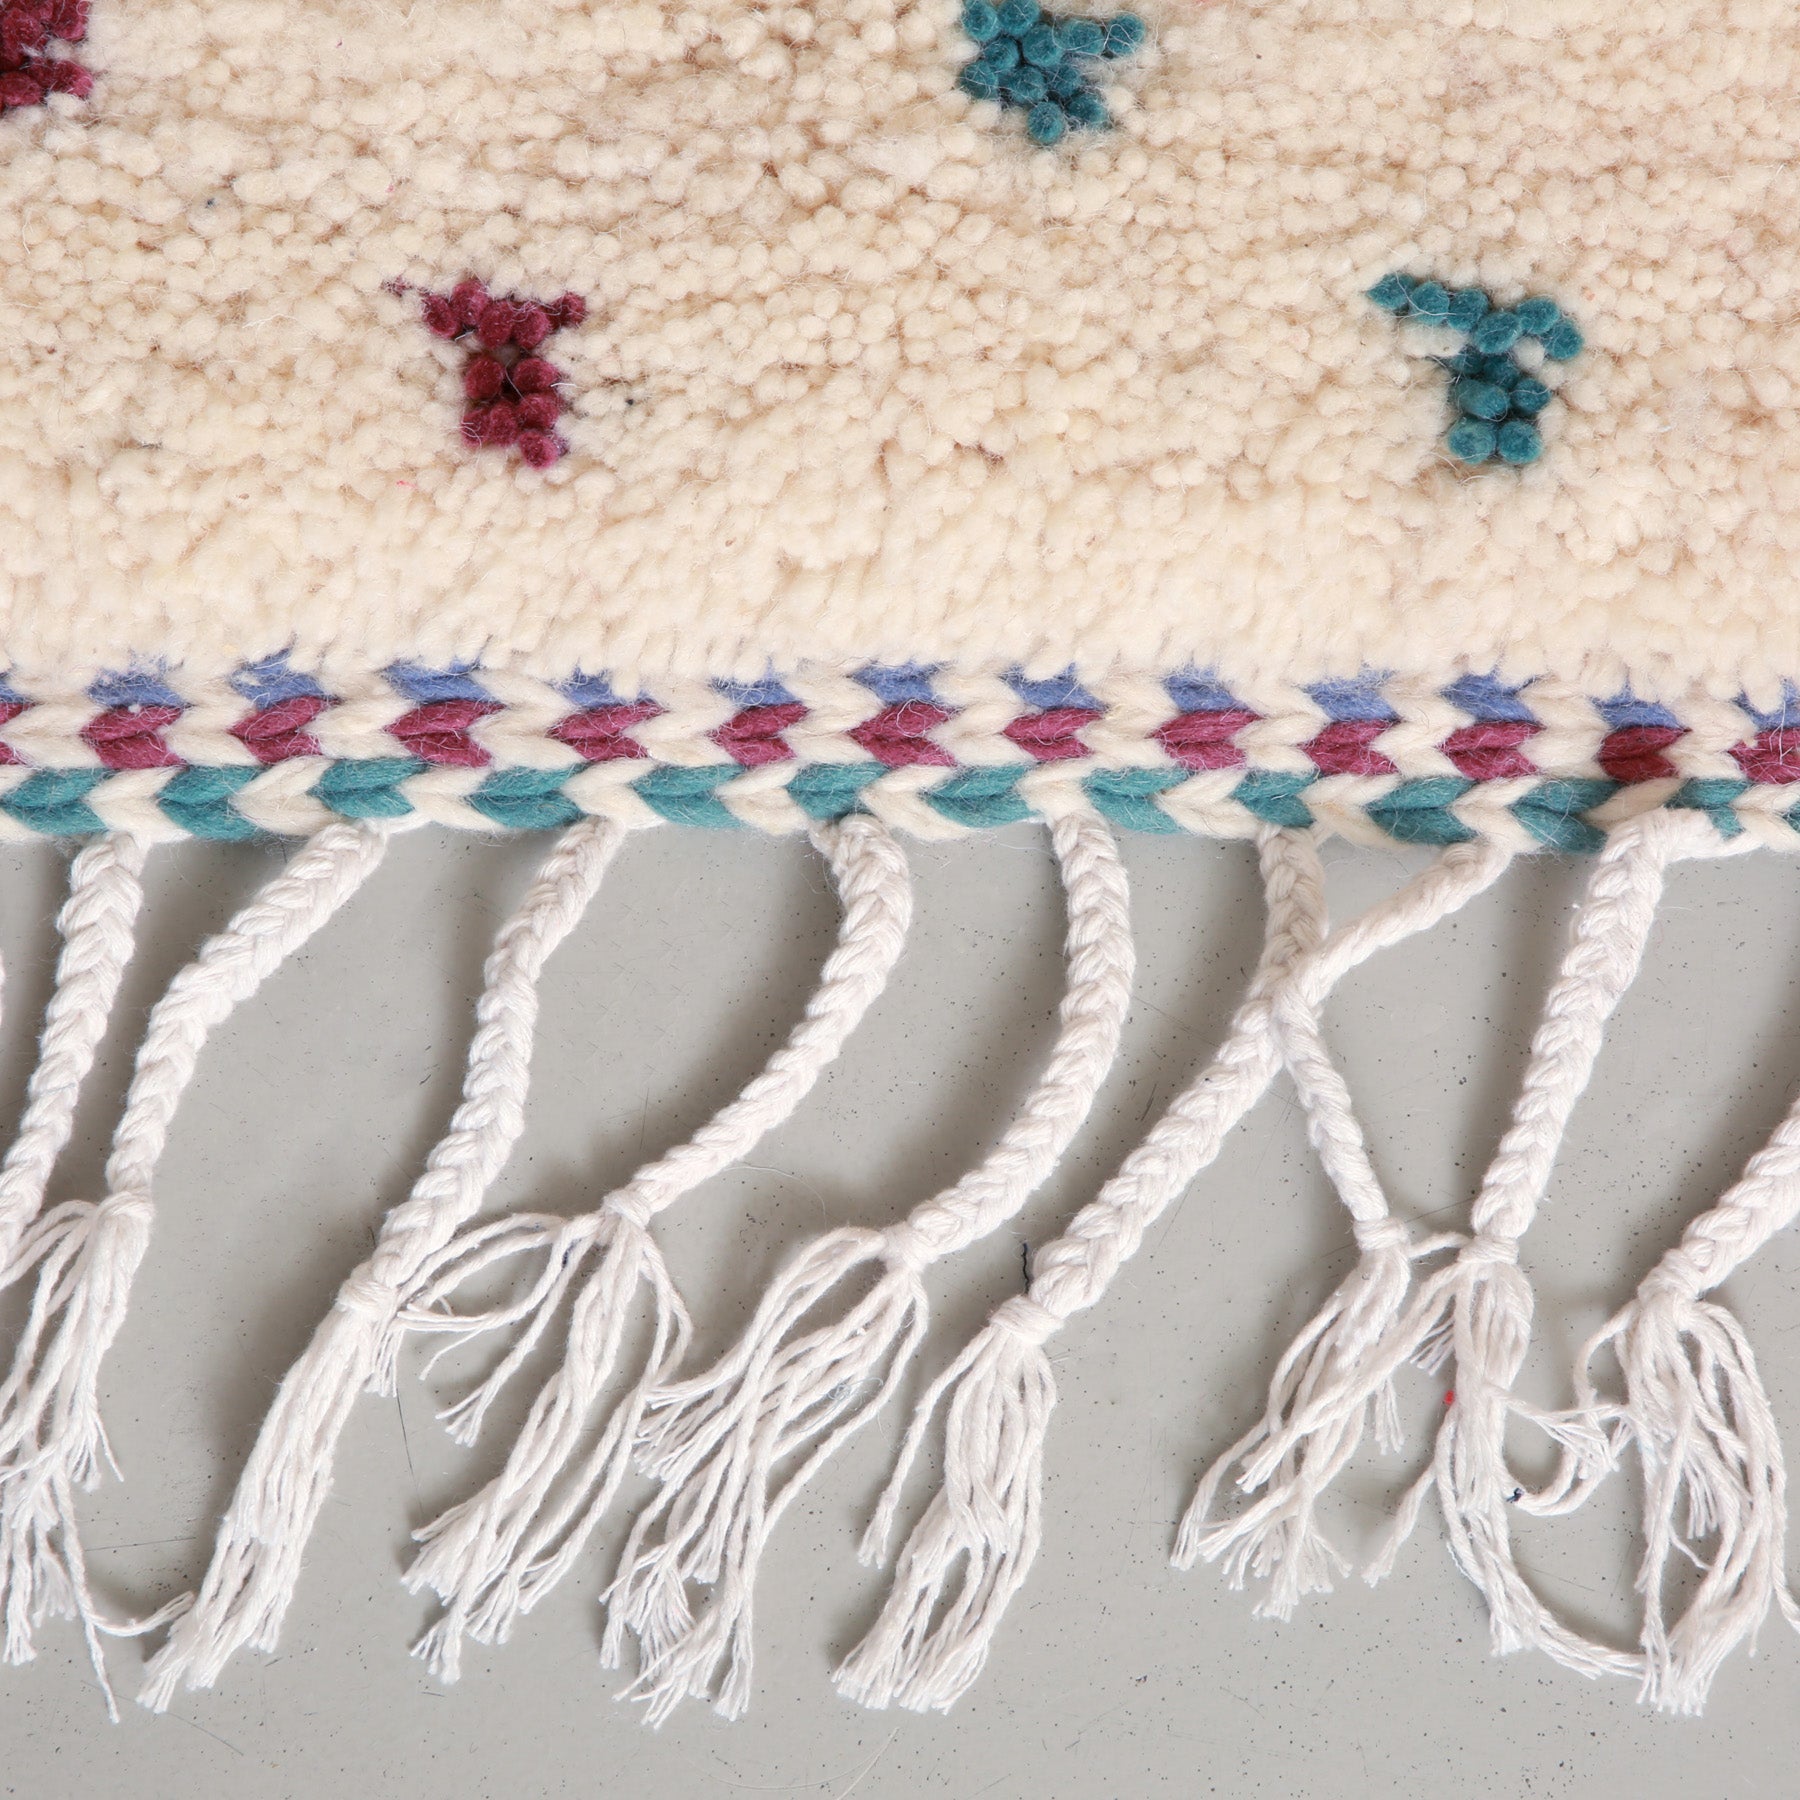 dettaglio della frangia colorata di un tappeto azilal a pois